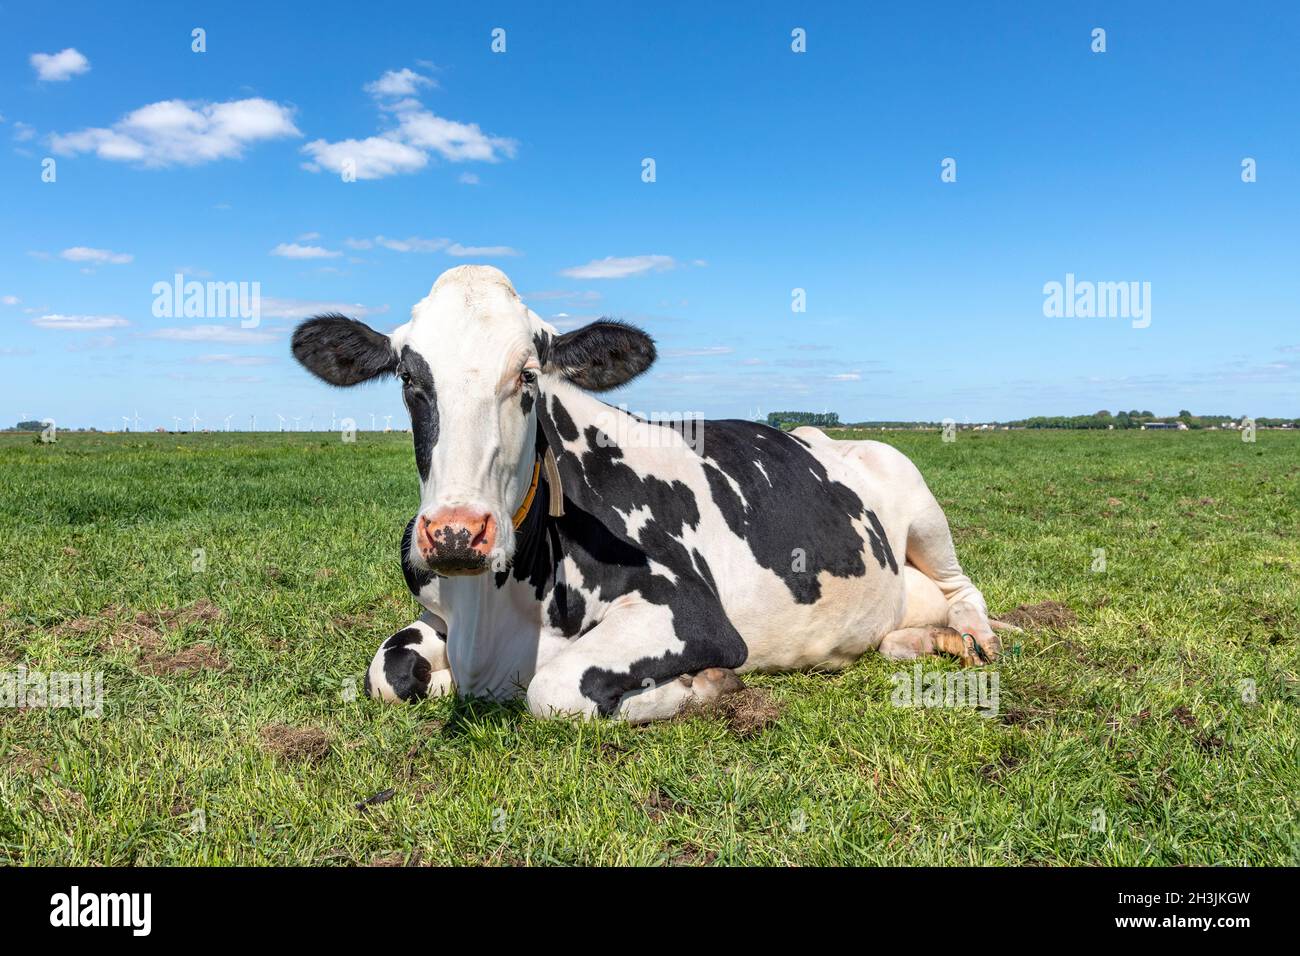 Kuh liegend glücklich, Beine gekräuselt, rosa Nase, schüchtern auf grünem Gras, entspannt auf der Wiese, von vorne unter blauem Himmel gesehen Stockfoto